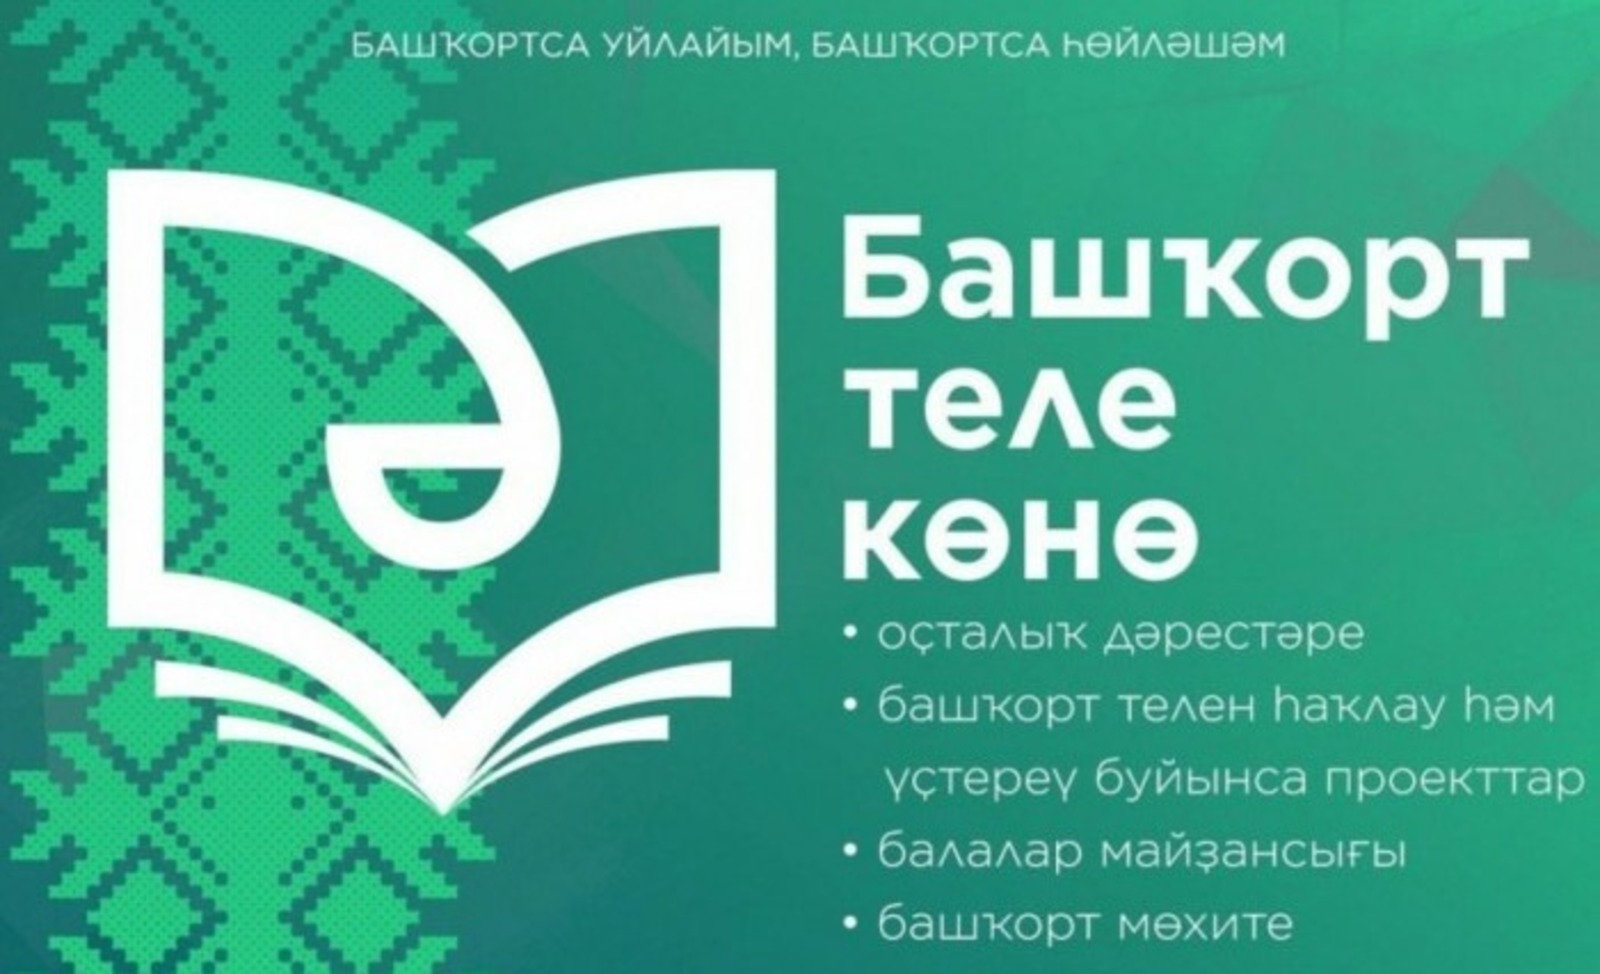 Как в республике отметят День башкирского языка